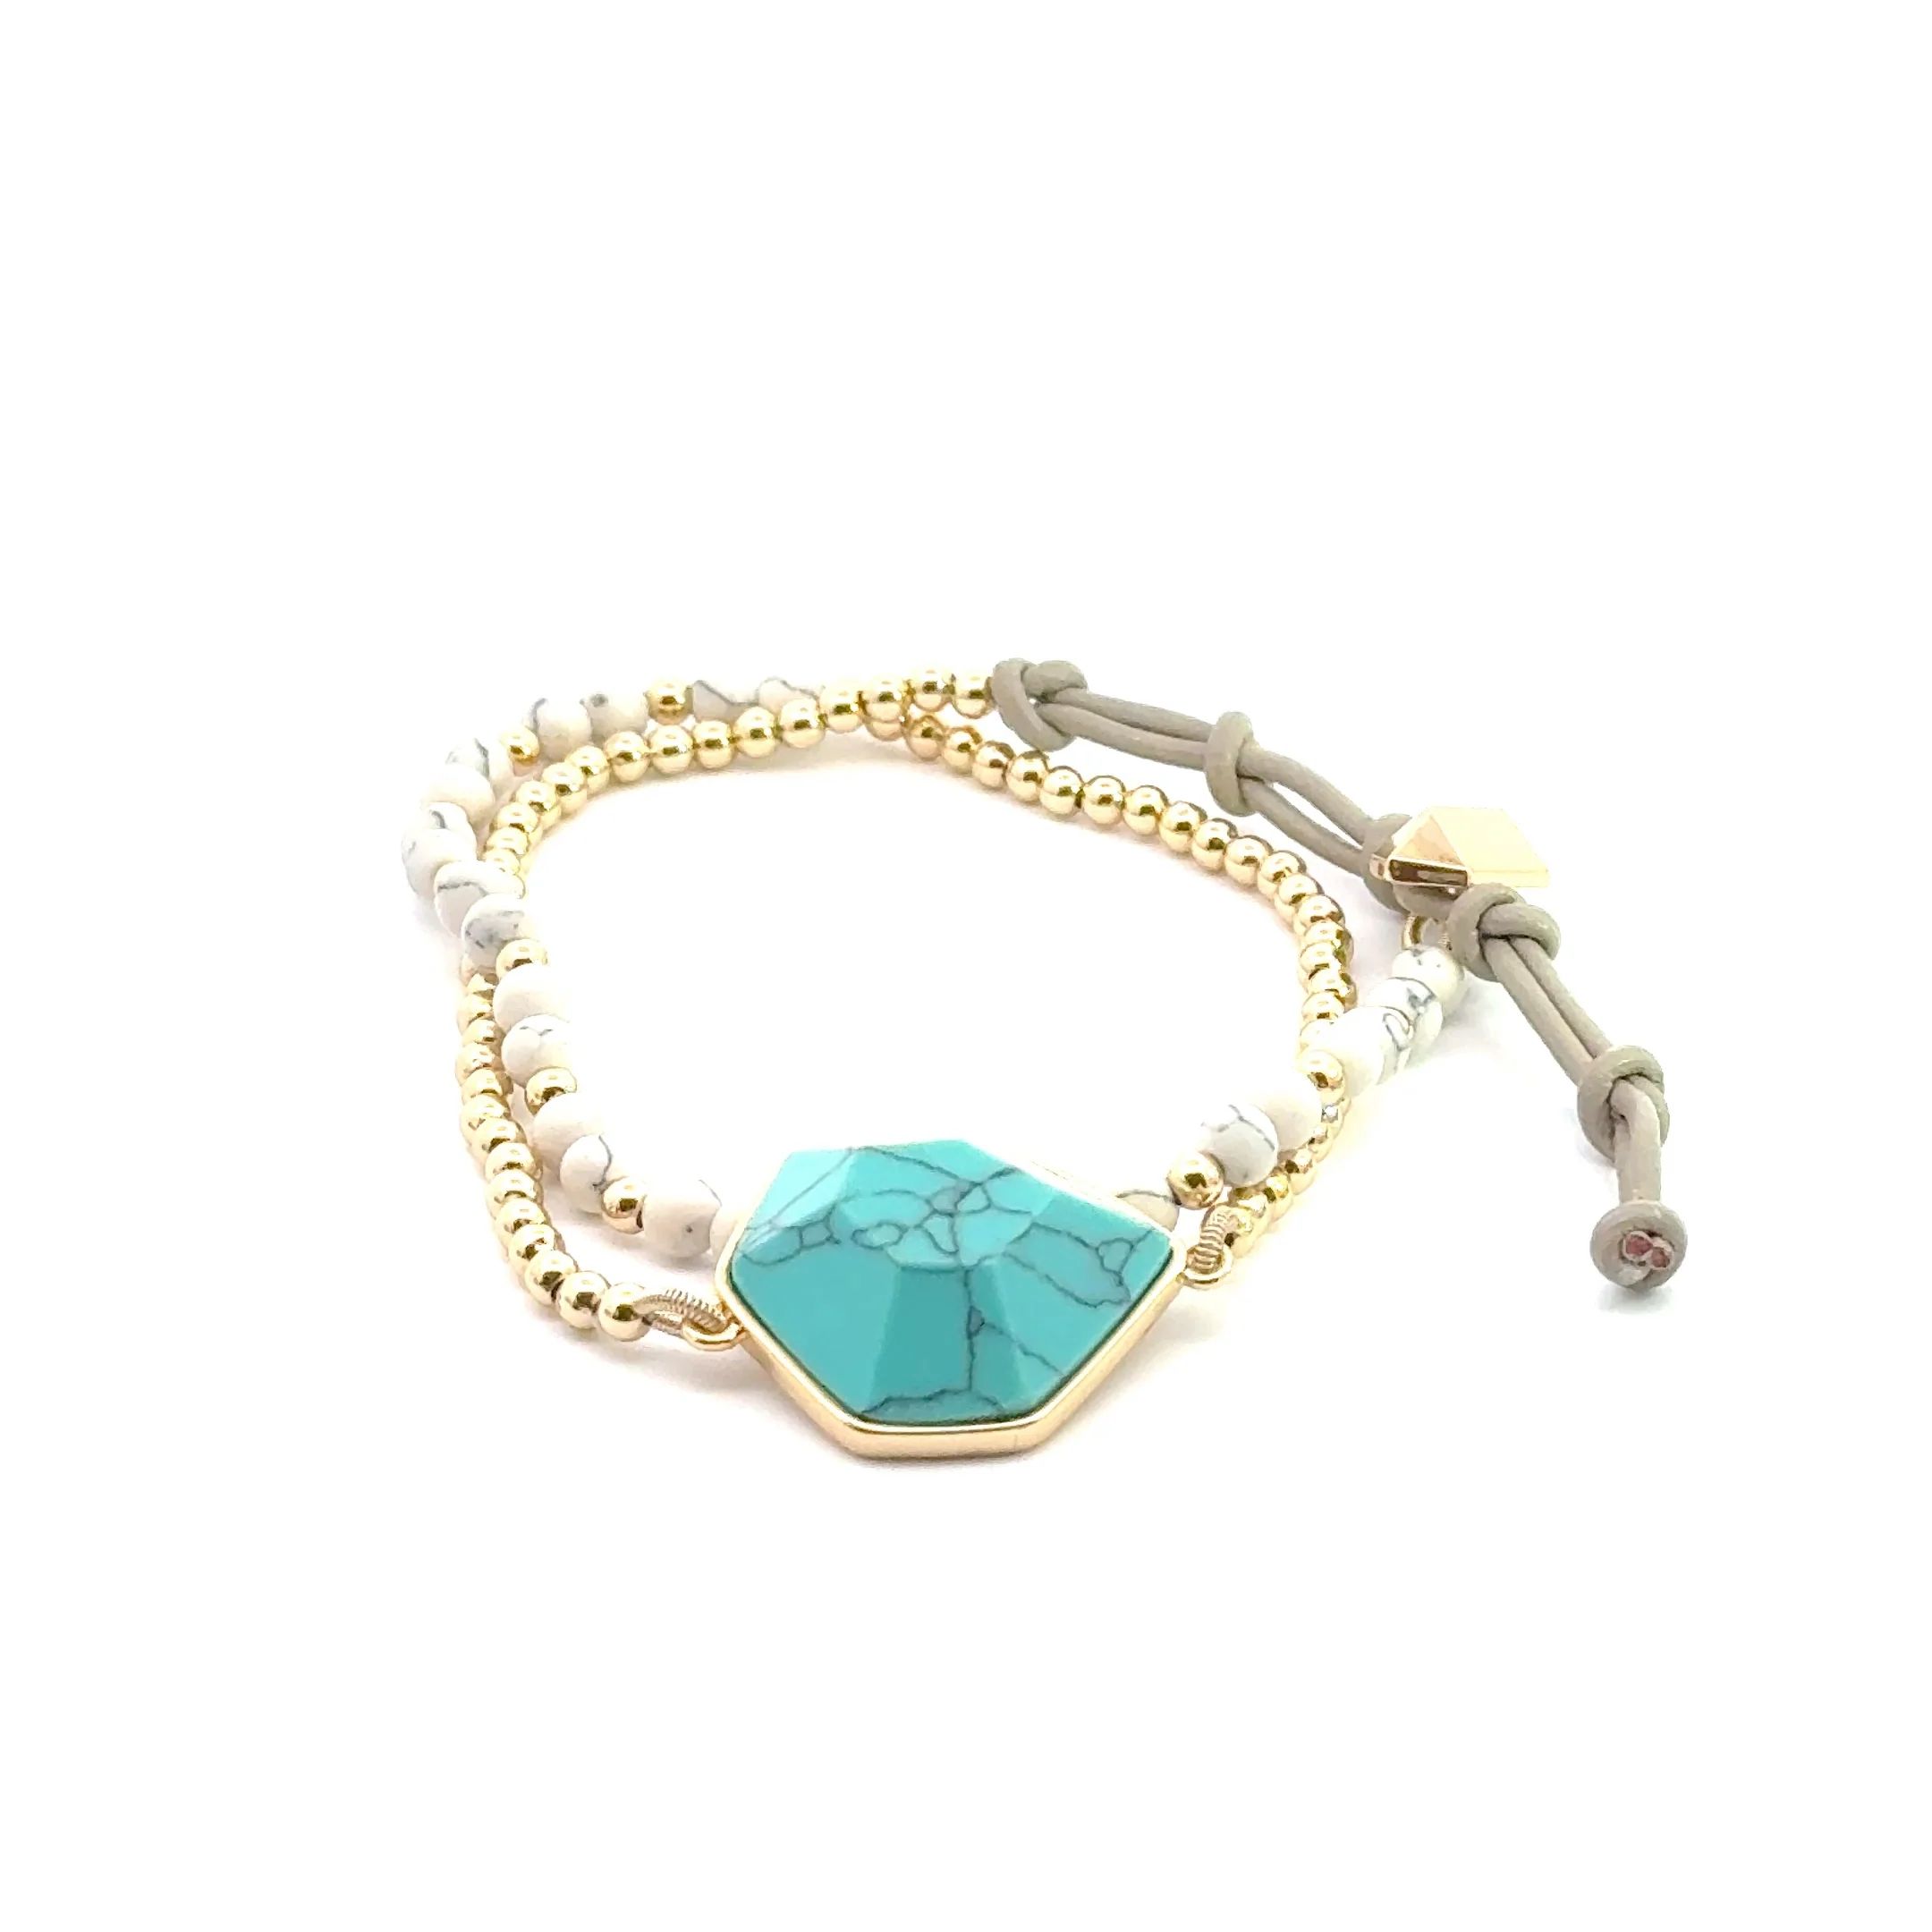 Amber Turquoise Convertible Bracelet and Choker | Stella & Dot